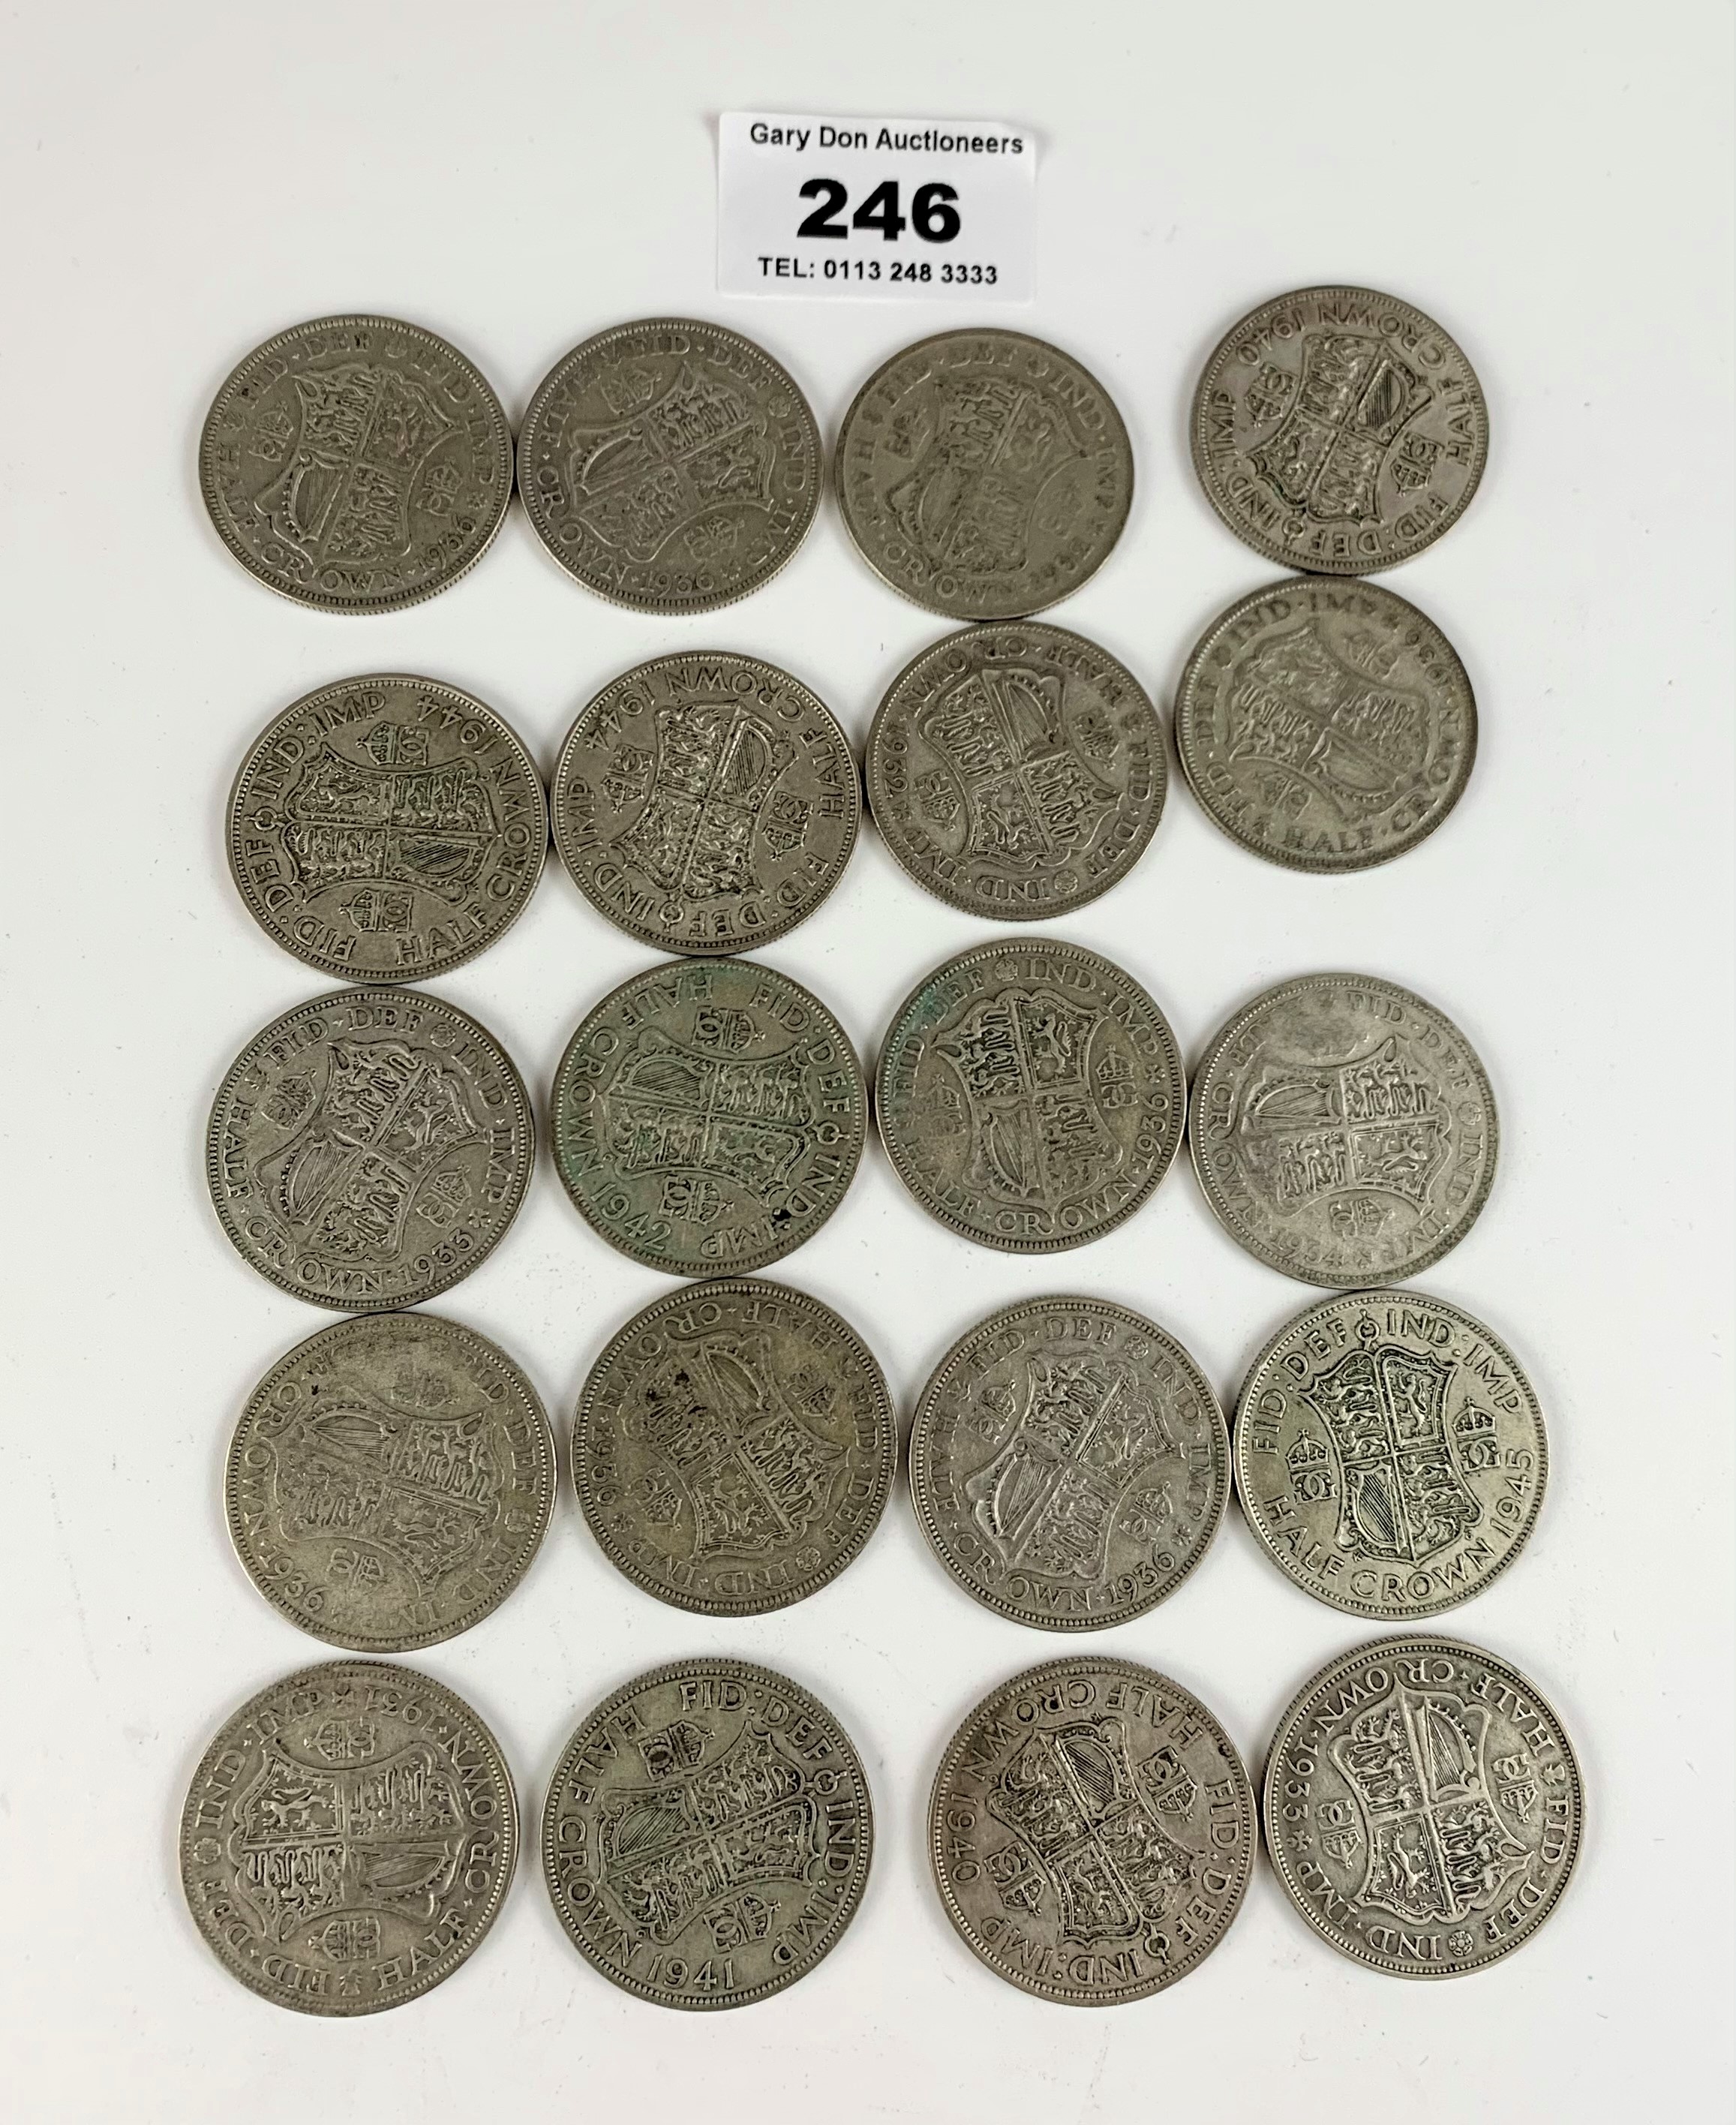 20 Half crown coins, pre-1947, half silver, w: 9 ozt